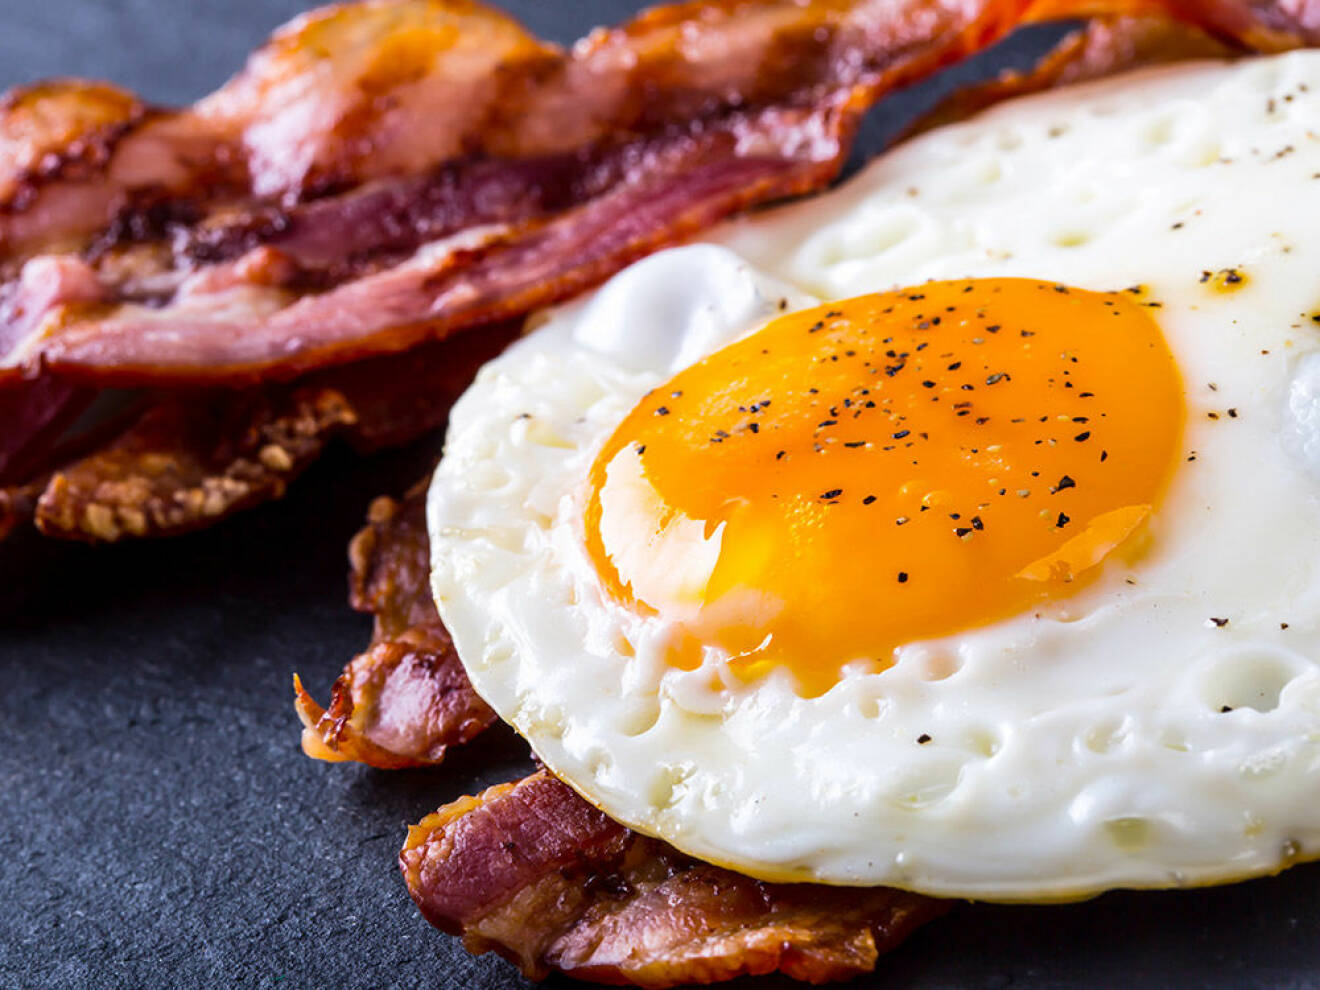 Ägg och bacon kan hjälpa till att bota bakfyllan. Foto: Shutterstock